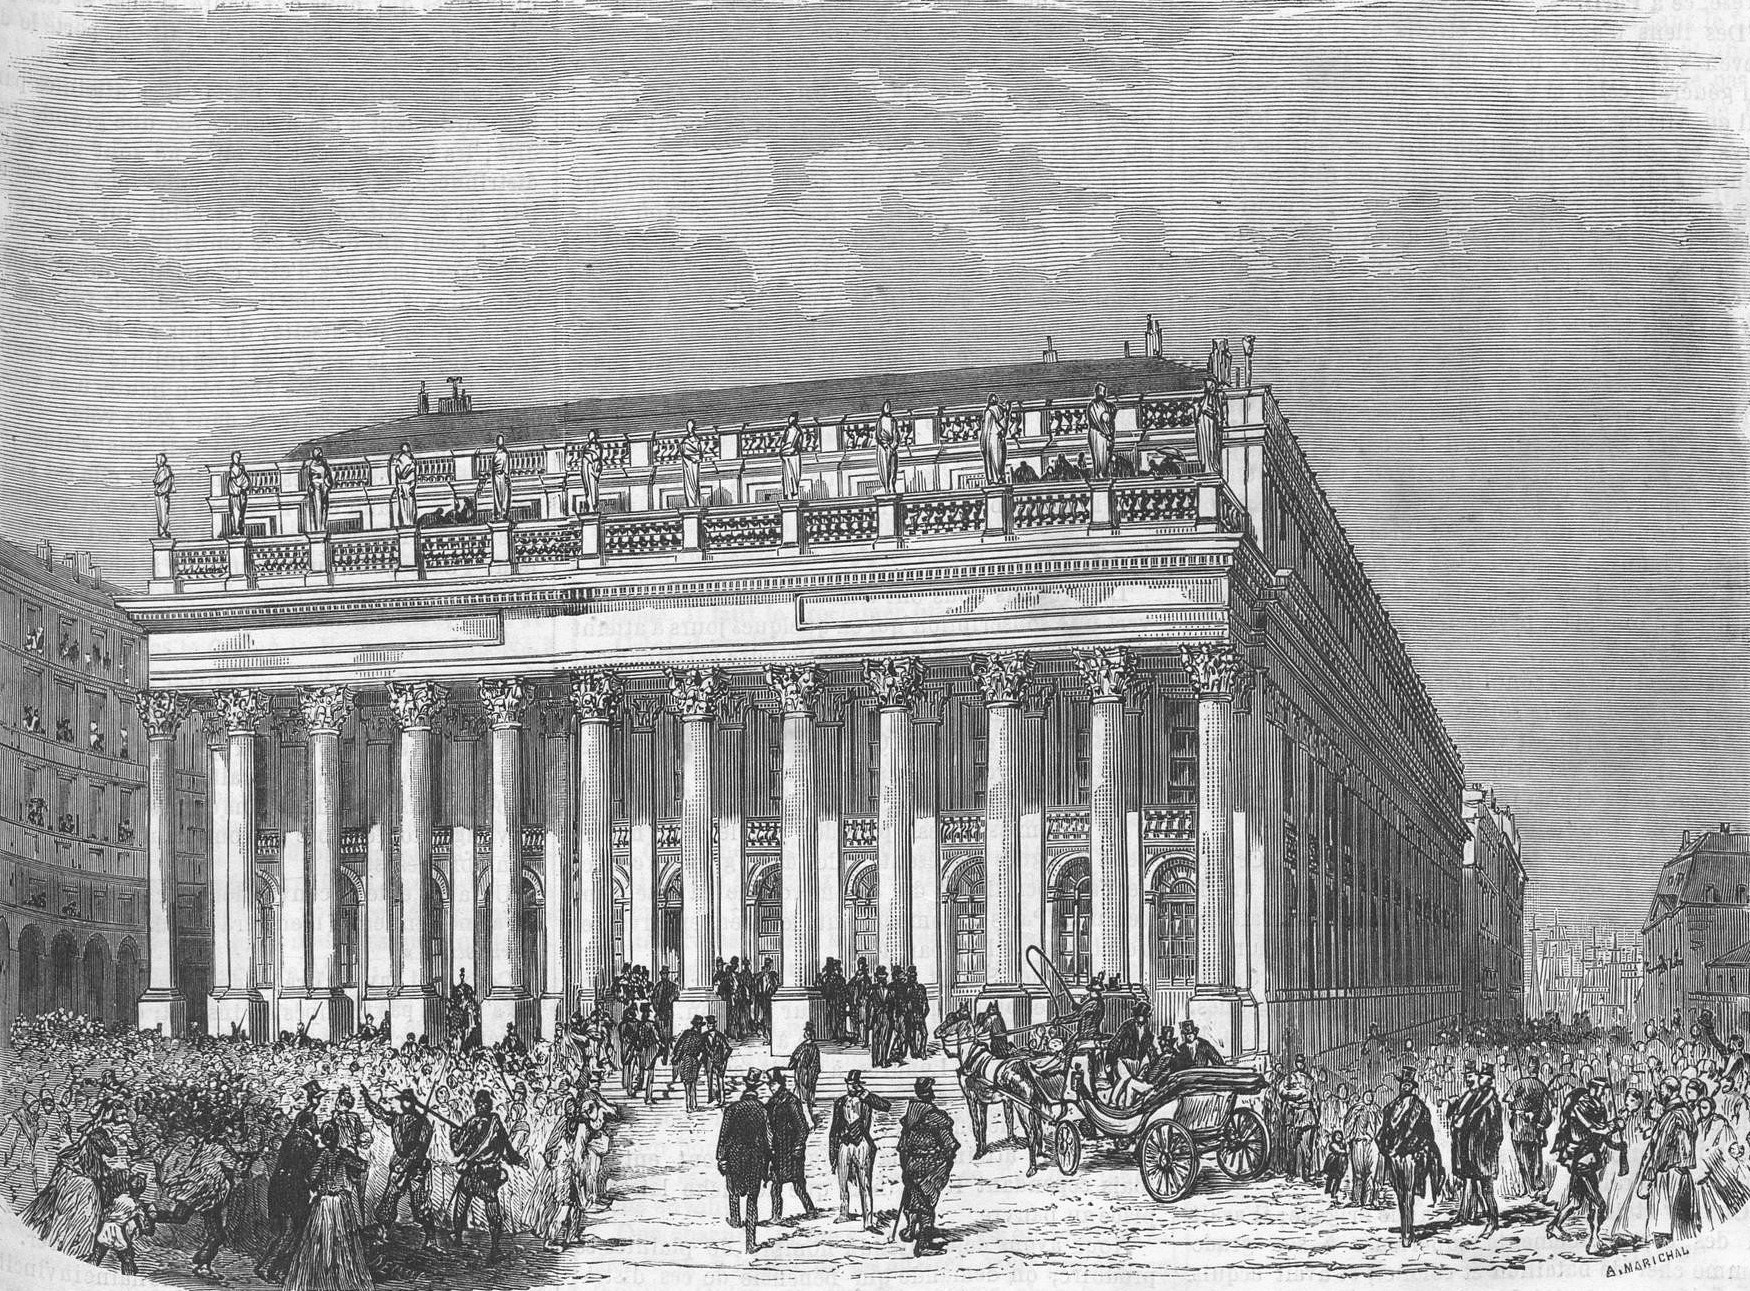 Bordeaux Le Grand Théâtre en 1871 - Le Monde Illustré du 18 février 1871